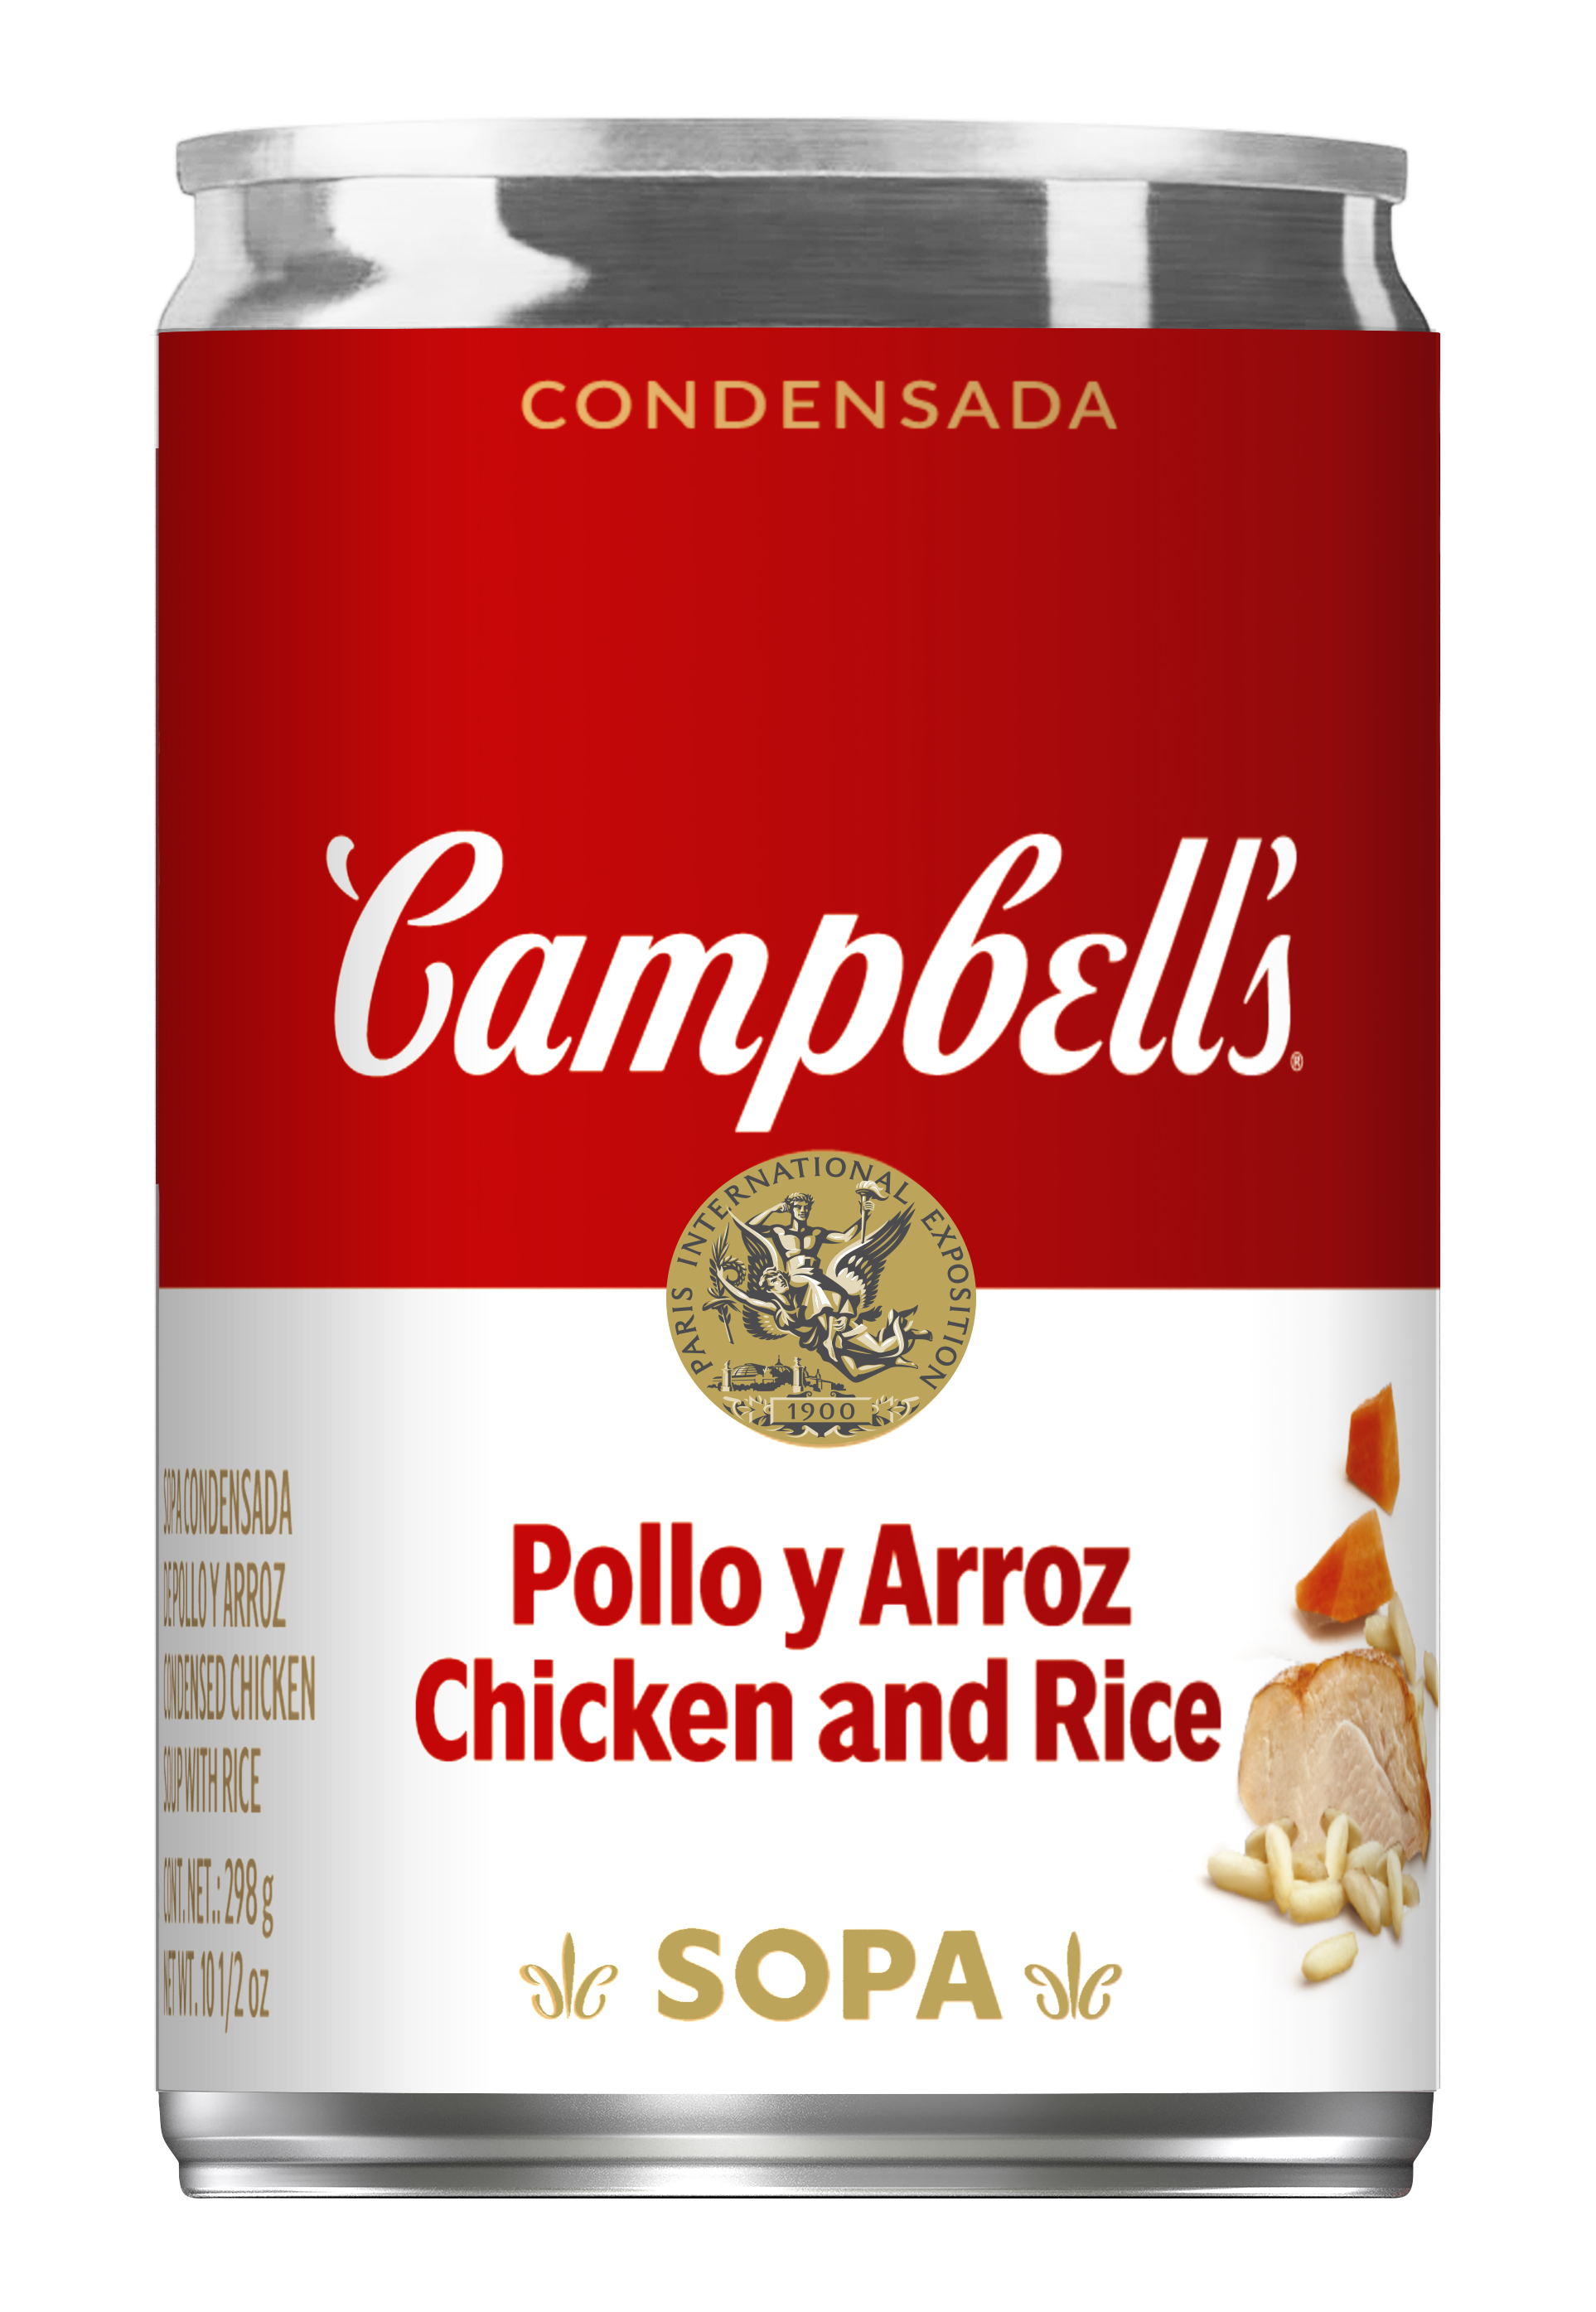 Sopa de Pollo y Arroz / Chicken and Rice